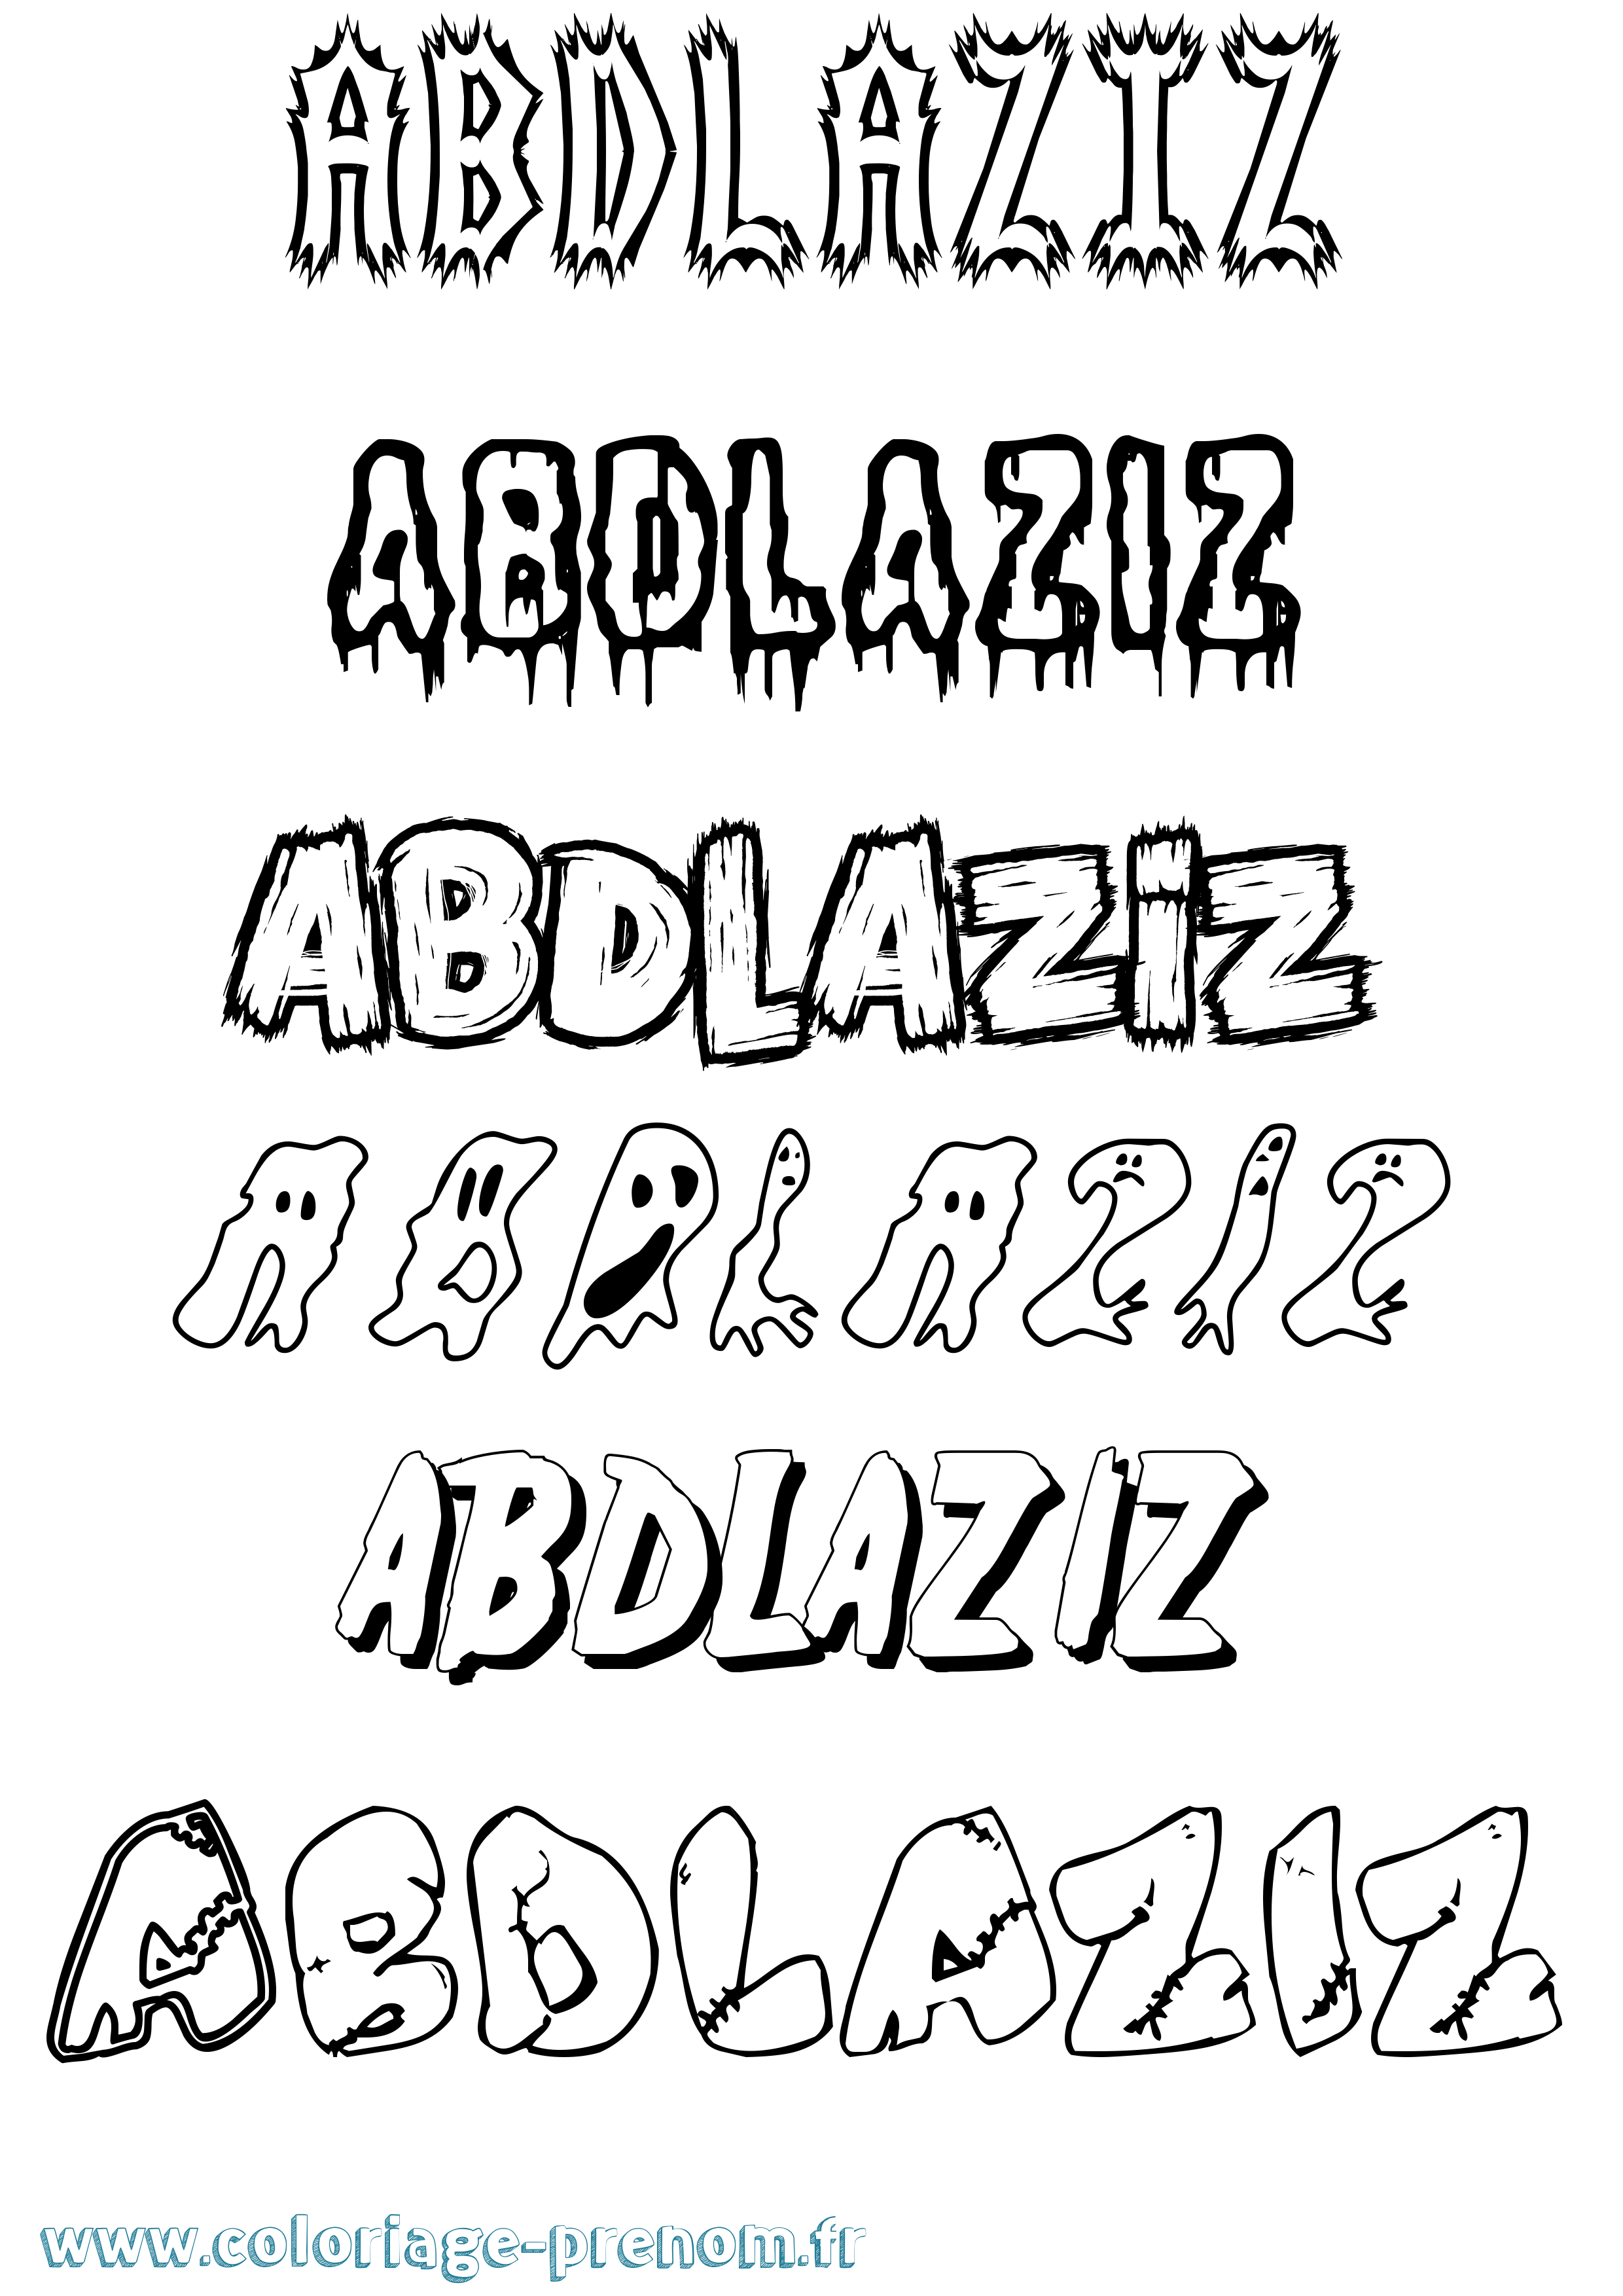 Coloriage prénom Abdlaziz Frisson